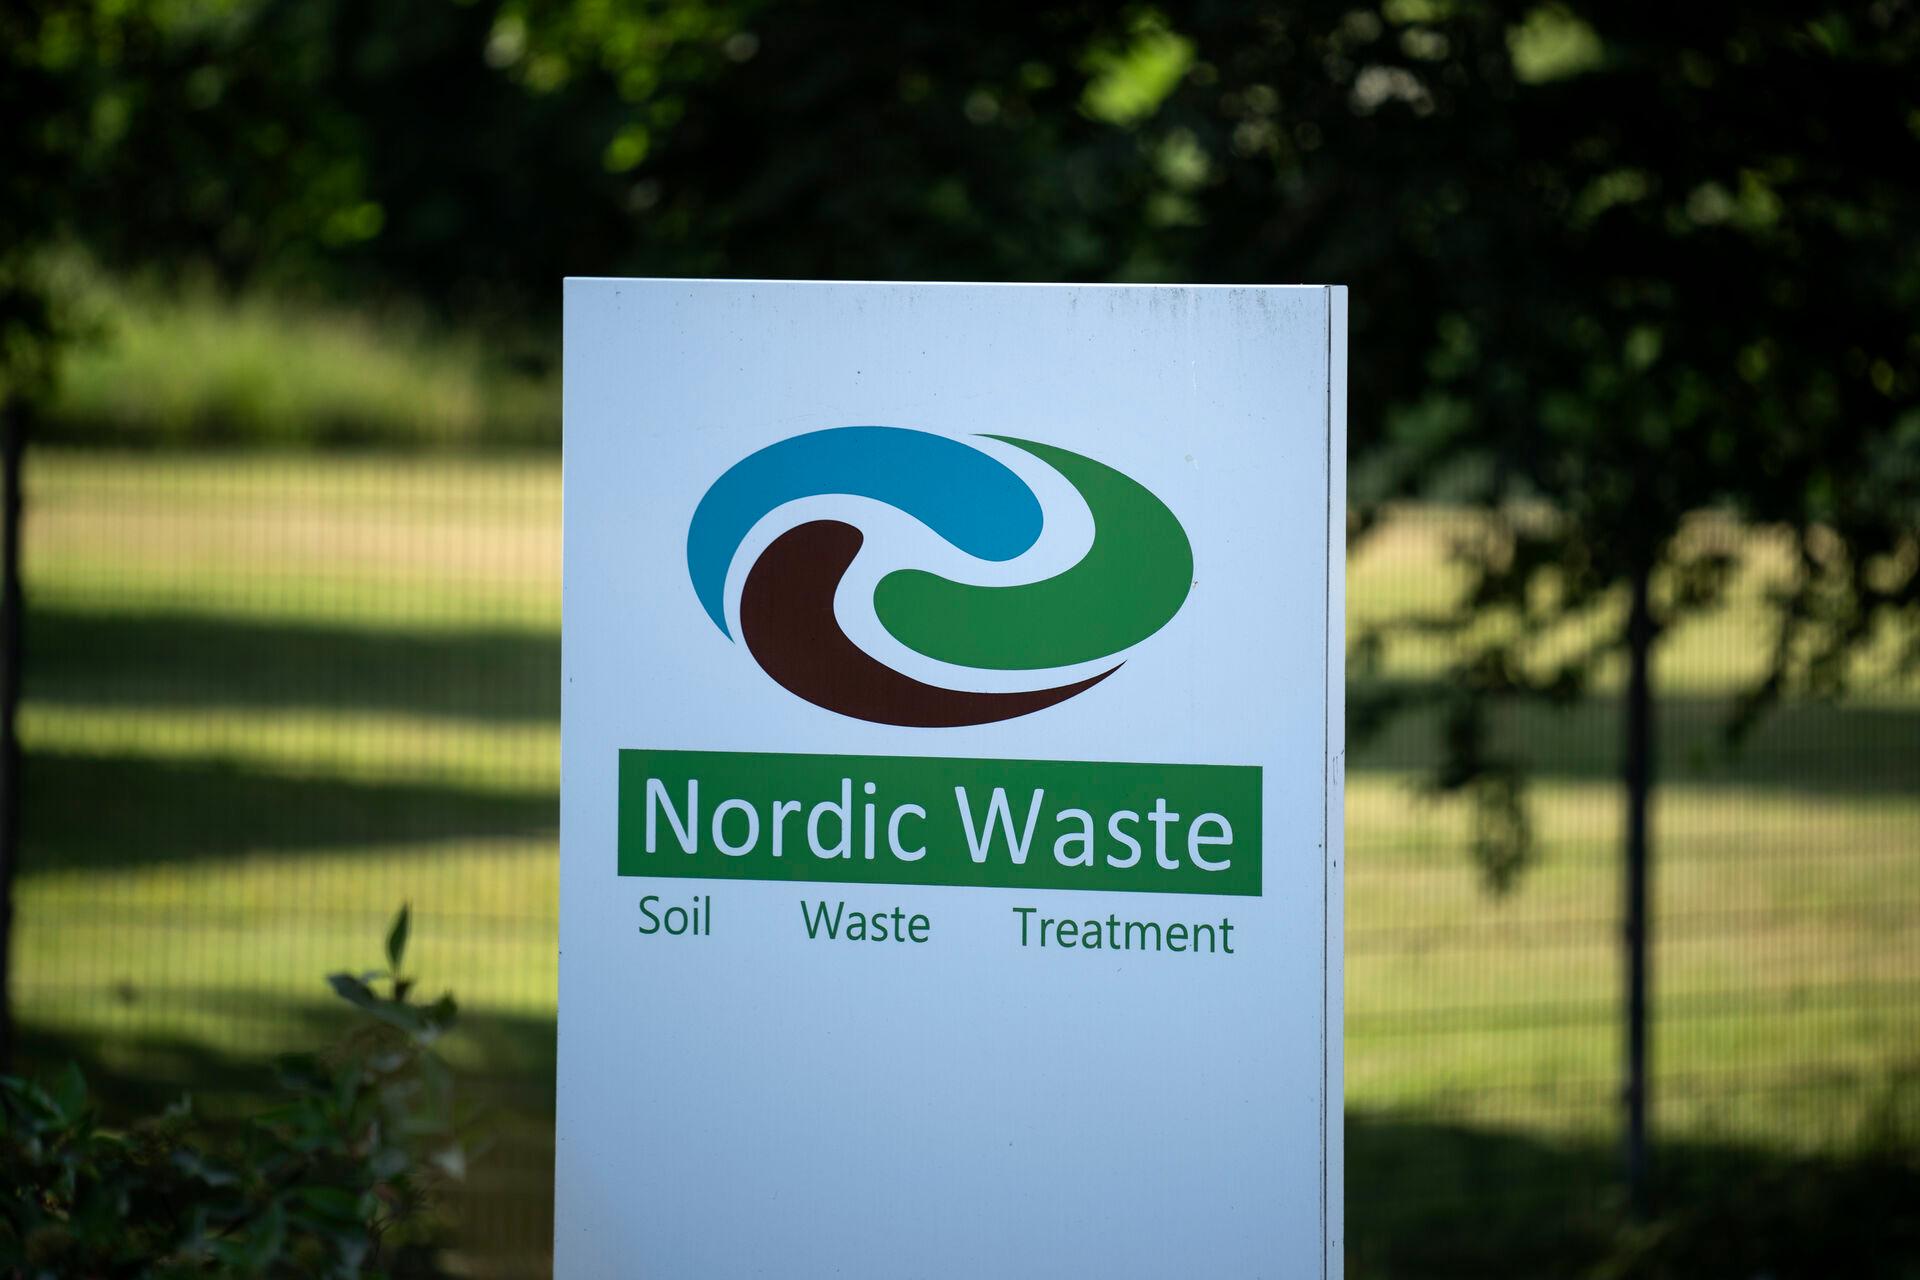   Det er snart fire uger siden, Nordic Waste overlod opgaven med at inddæmme et kæmpemæssigt jordskred til Randers Kommune. Kommunen arbejder fortsat med at undgå, at jorden havner i den nærliggende Alling Å.